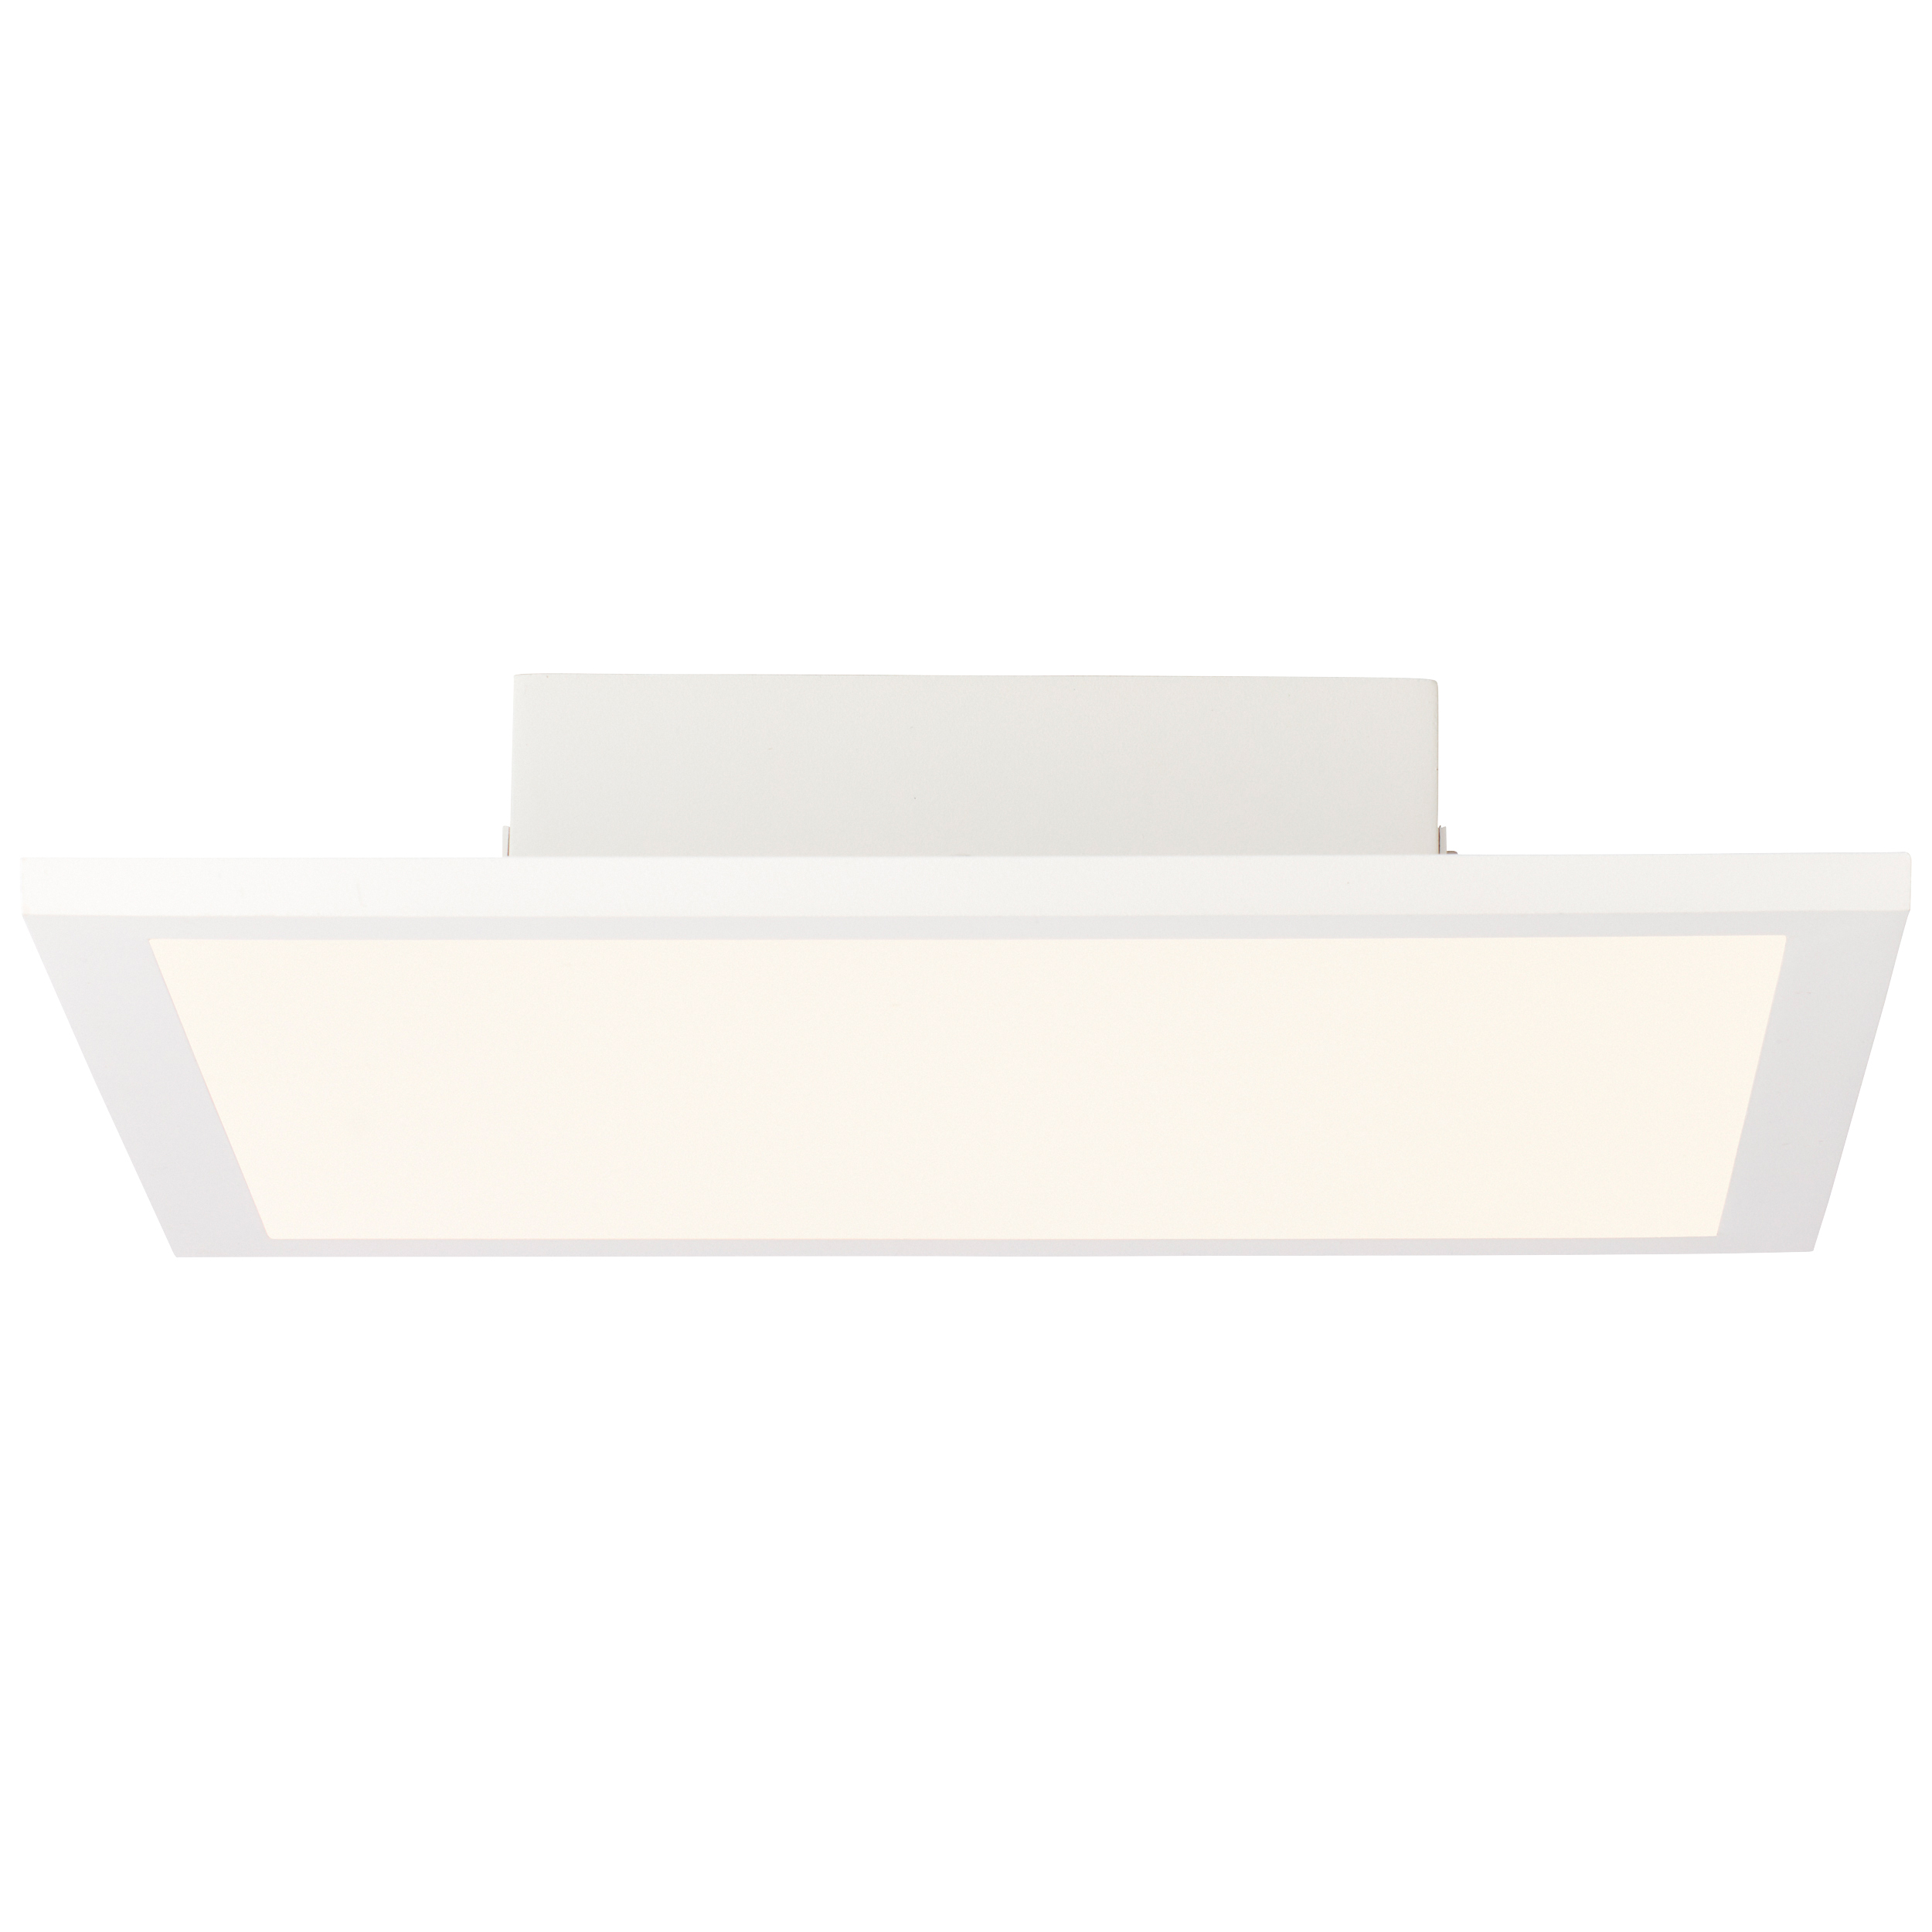 Buffi LED Deckenaufbau-Paneel 30x30cm weiß